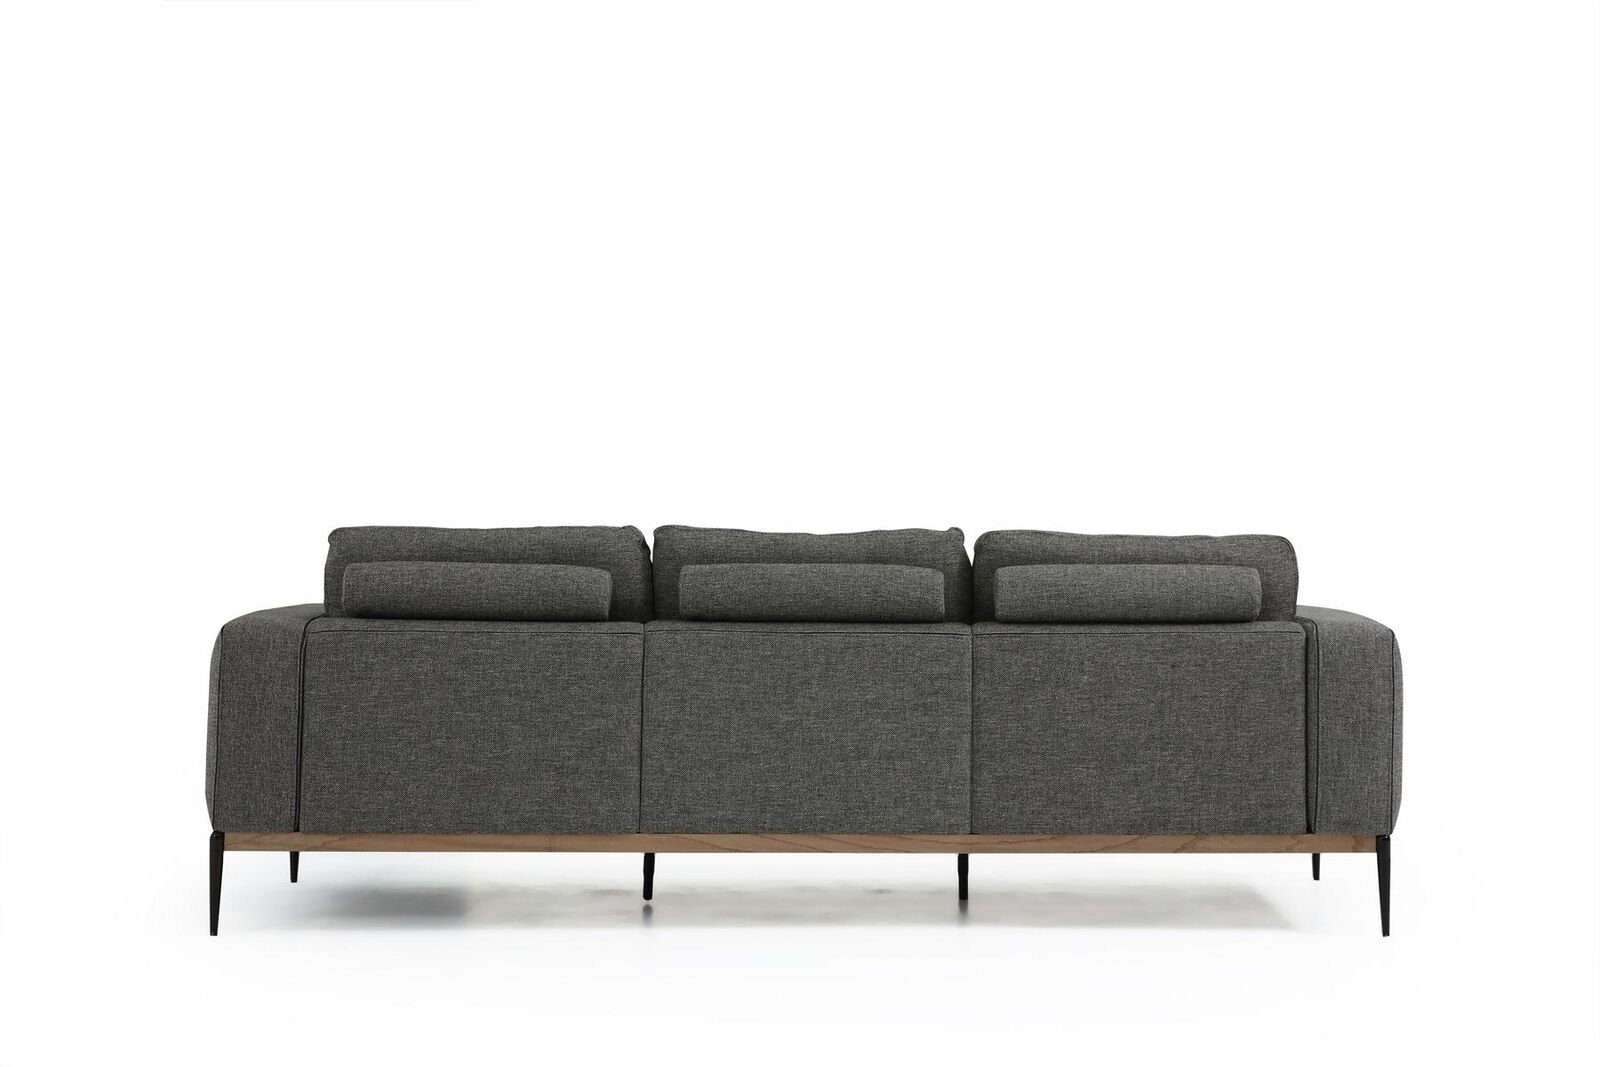 Viersitzer Made Sitzer 4 in 1 Modern Teile, Europa Stoff Sofa Design Wohnzimmer Sofas Grau, 4-Sitzer JVmoebel